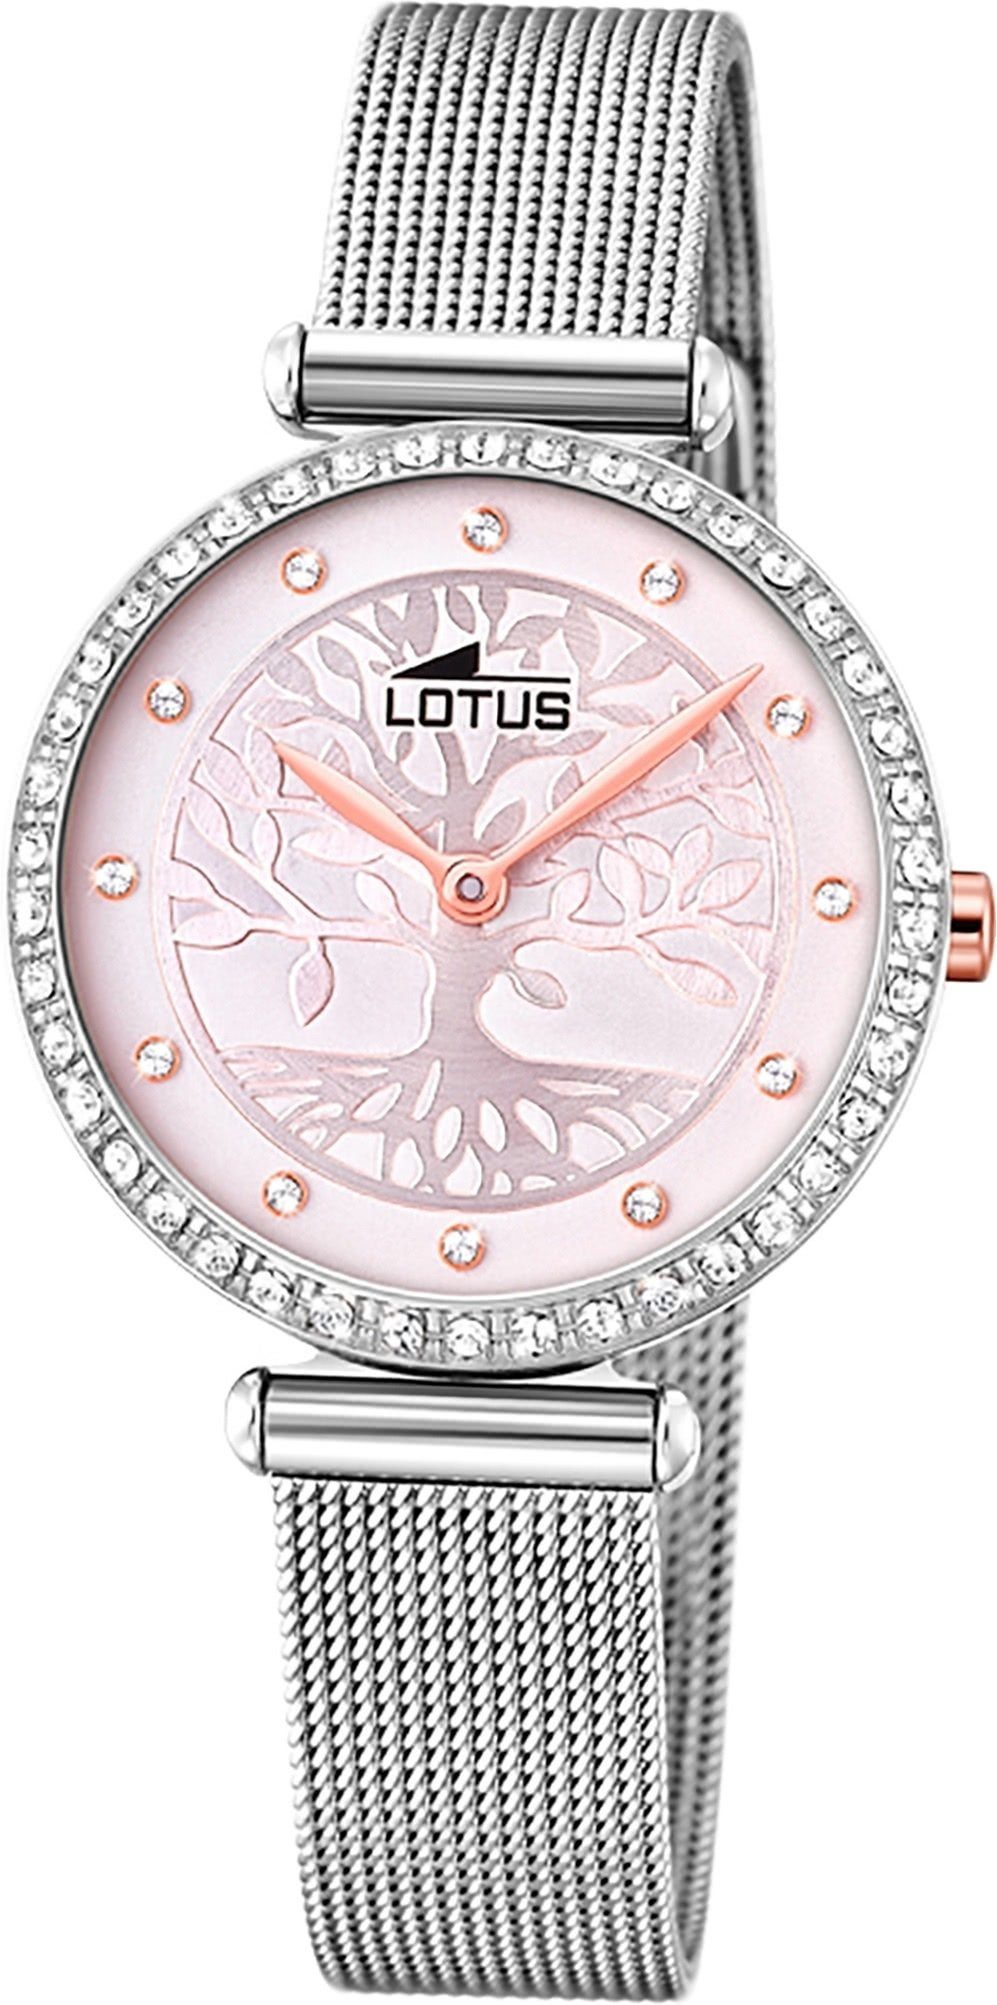 Lotus Quarzuhr LOTUS Edelstahl Damen Uhr 18709/2, Damenuhr mit Edelstahlarmband, rundes Gehäuse, klein (ca. 29mm), Fashi